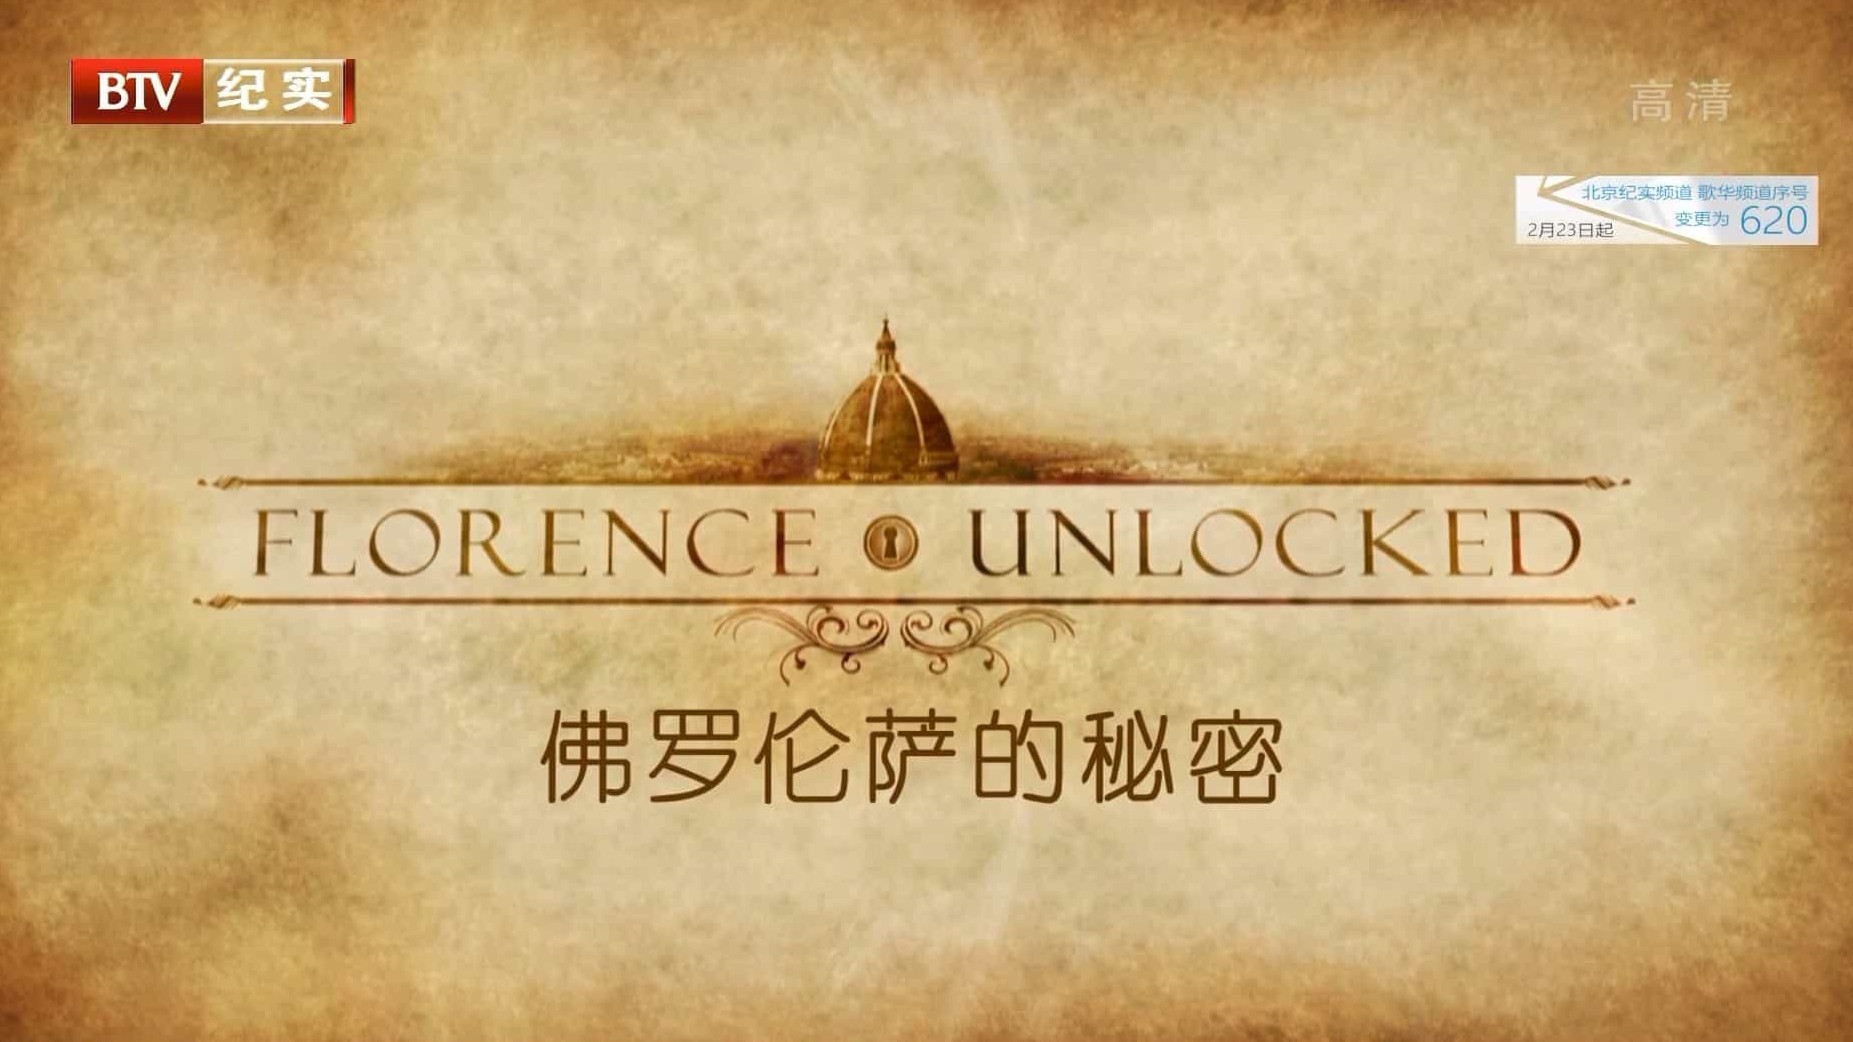 国家地理/BTV纪录片《佛罗伦萨的秘密 Florence Unlocked》全1集 国语中字 1080P高清网盘下载 